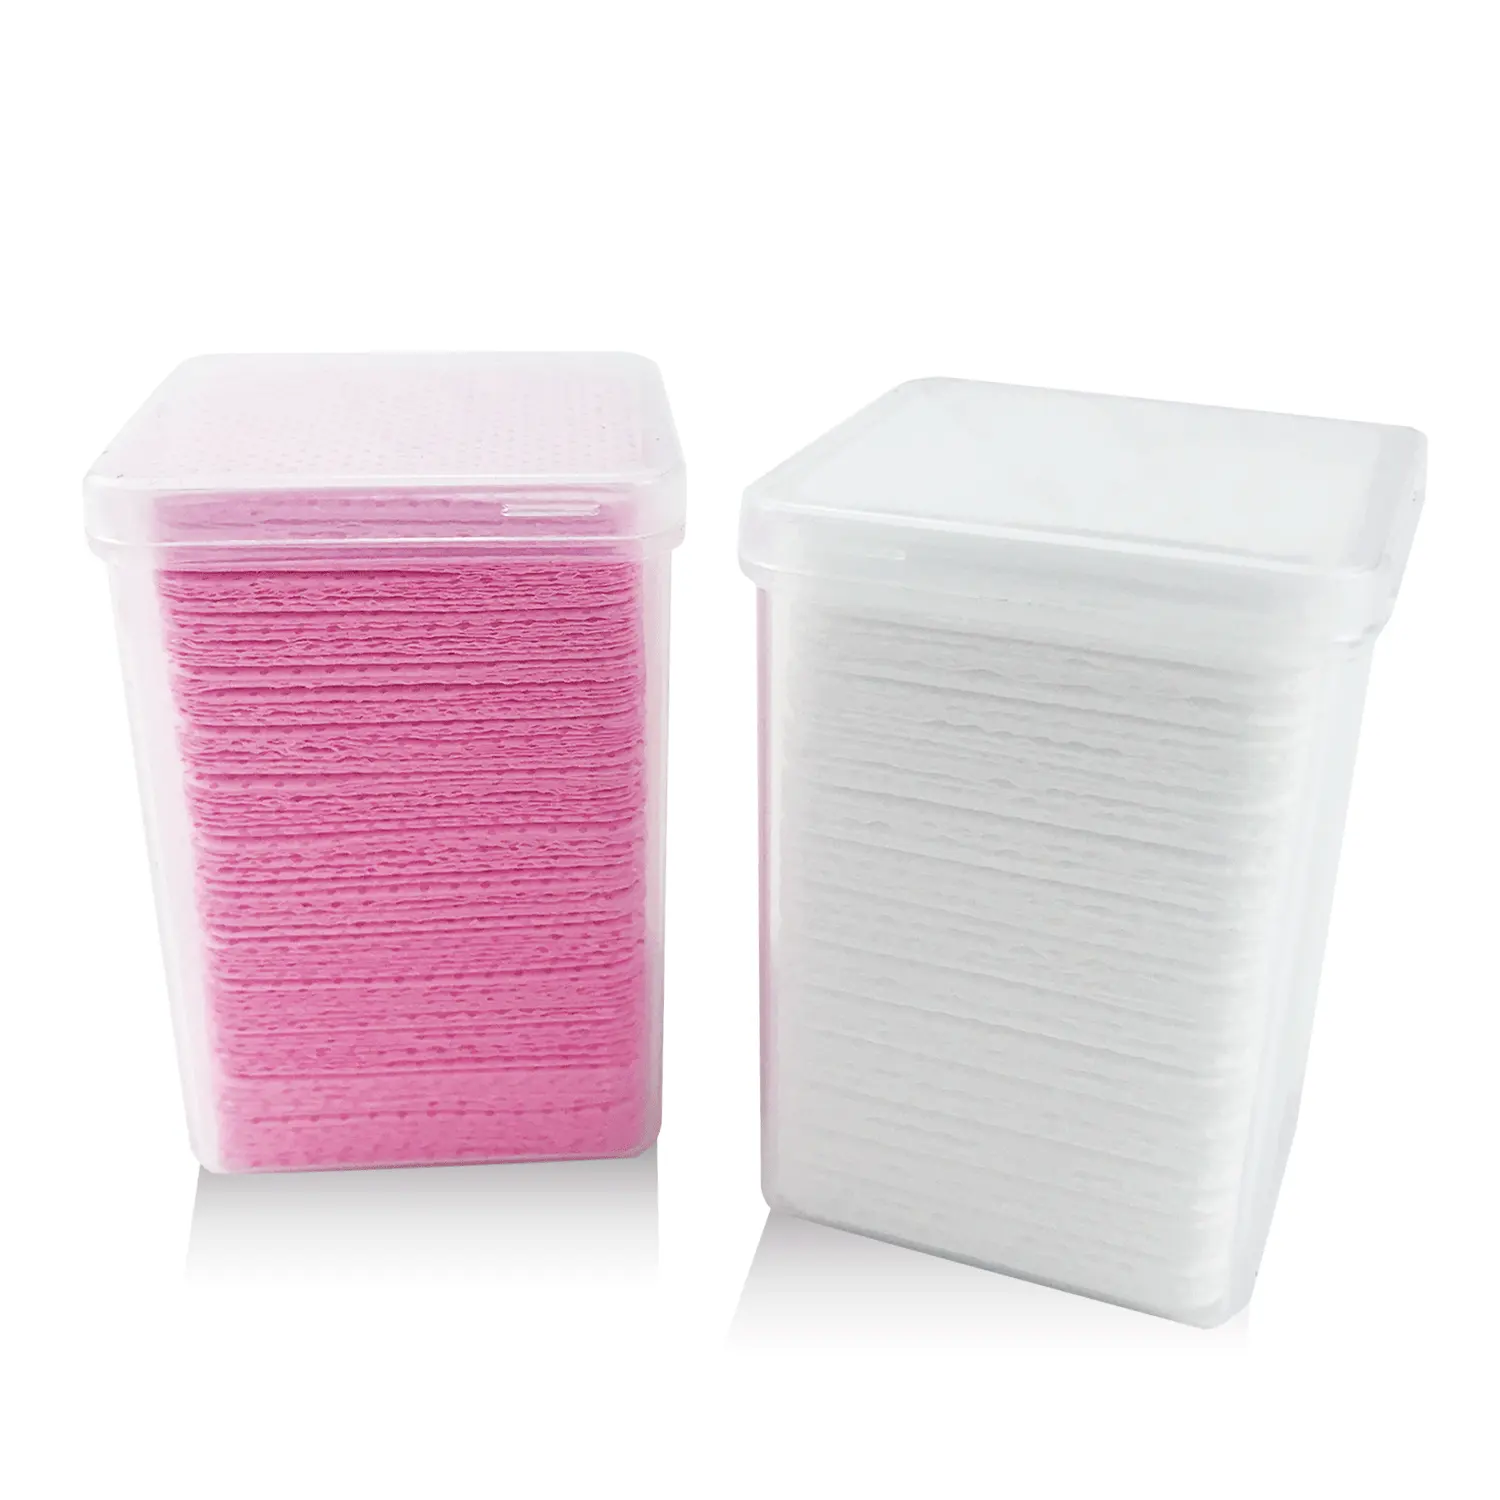 Stock disponibile carta senza pelucchi cotone strumento per la rimozione della colla per ciglia foglio di cotone pulito detergente per unghie artistiche